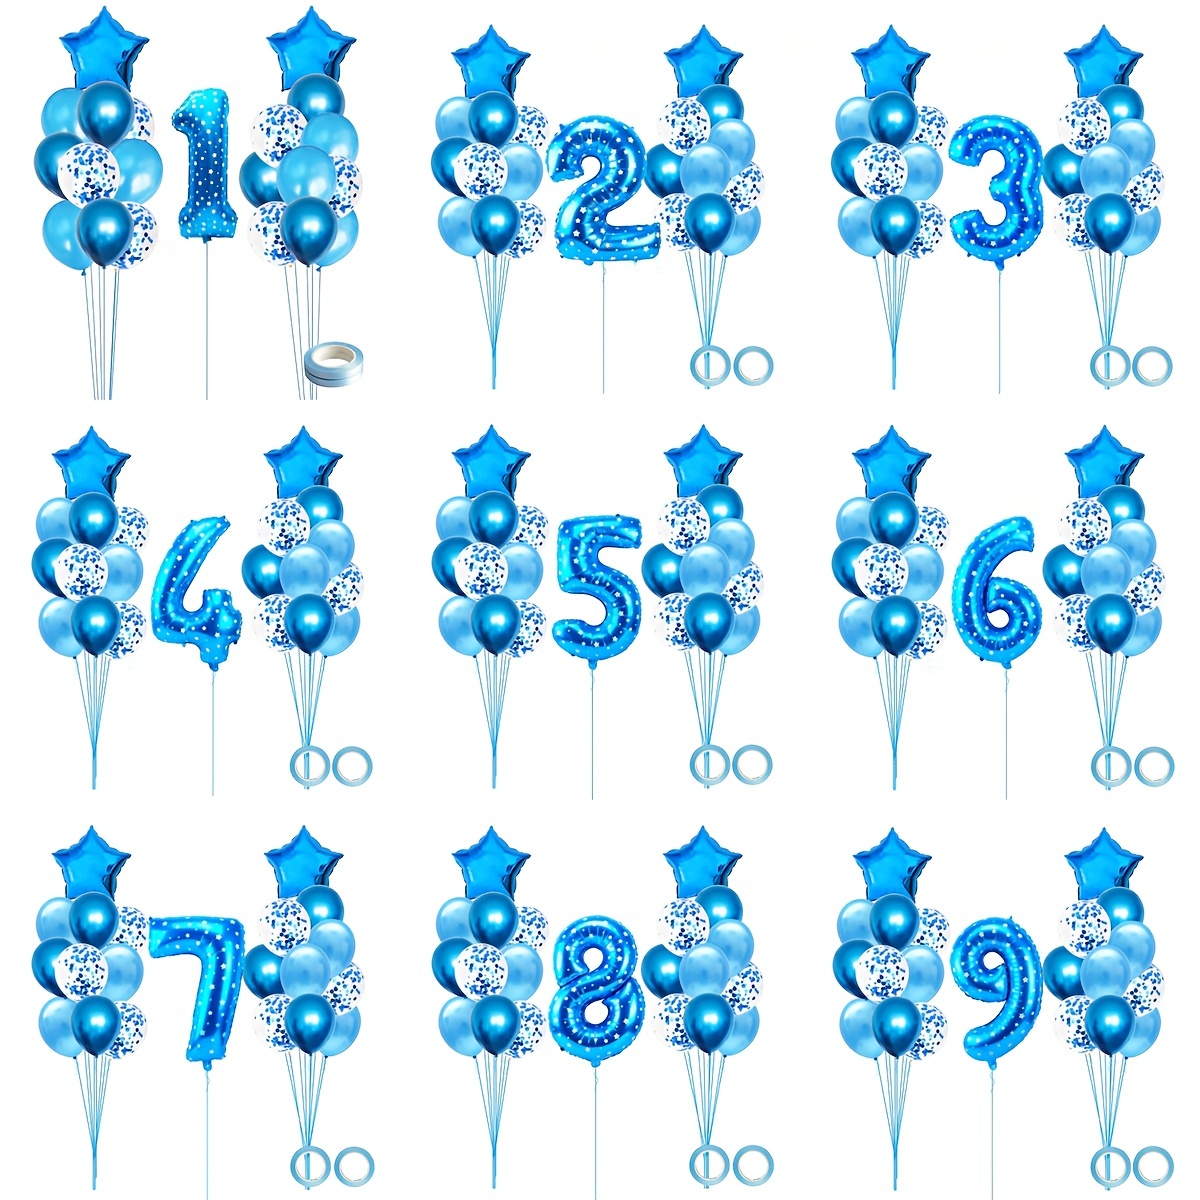  Decoraciones de primer cumpleaños para bebé niño, globos de  número 1 de 40 pulgadas, globos de Mylar azul claro con el número 1 de 1 año,  globos de primer cumpleaños, suministros